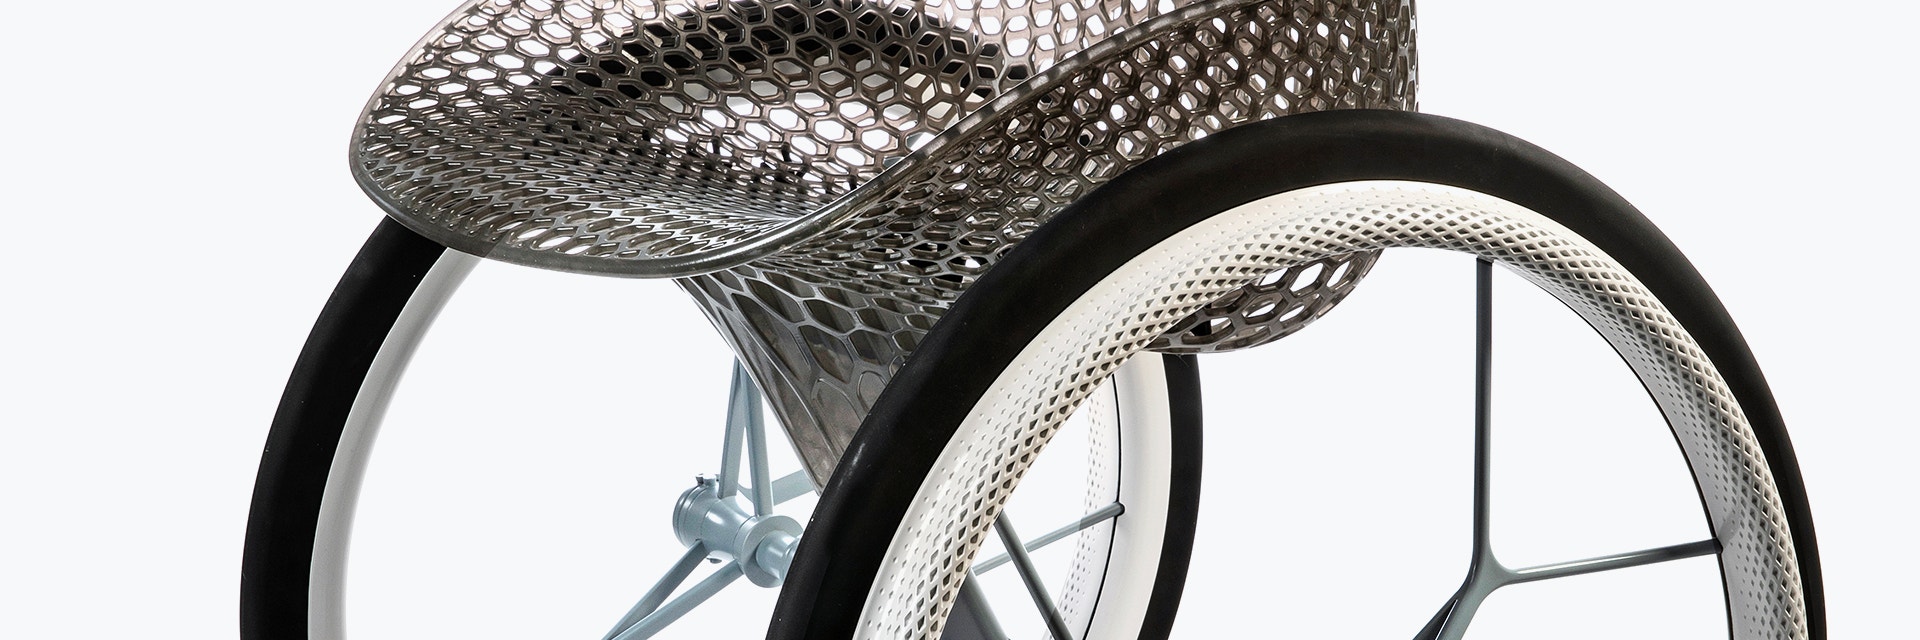 Vista de un asiento geométrico de una silla impreso en 3D desde un prototipo impreso en 3D de una silla de ruedas personalizada, con aspecto futurista, utilizando múltiples materiales de impresión 3D. El asiento tiene una estructura reticulada y está fabricado en resina gris traslúcida. Los radios de la rueda están hechos de metal impreso en 3D.